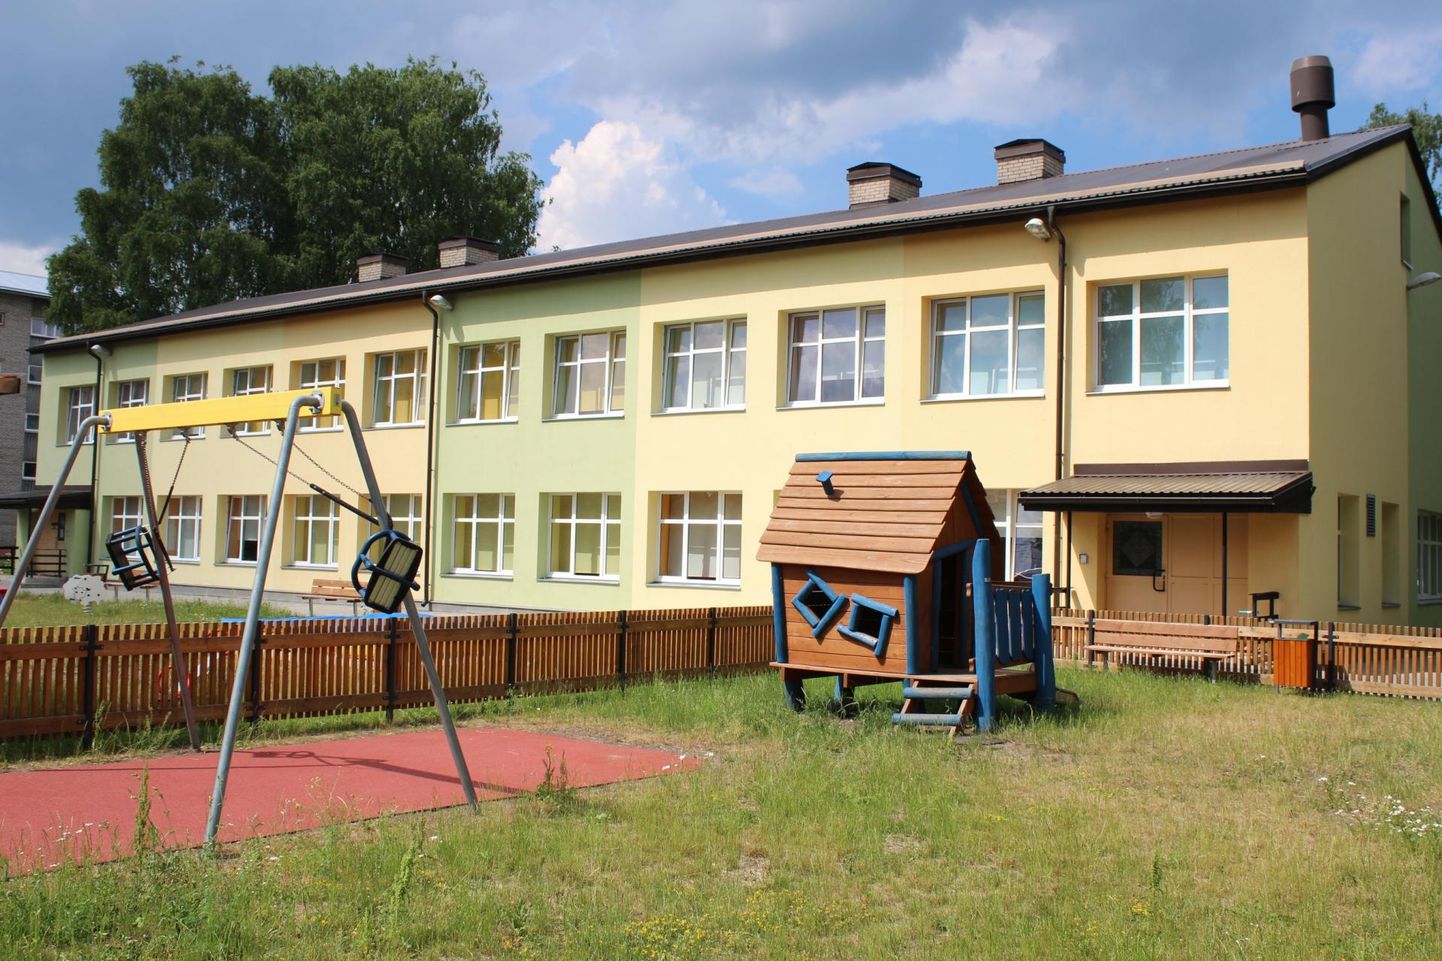 Tapa lasteaed Vikerkaar peab praegu läbi ajama 55 aastat vana majaga.